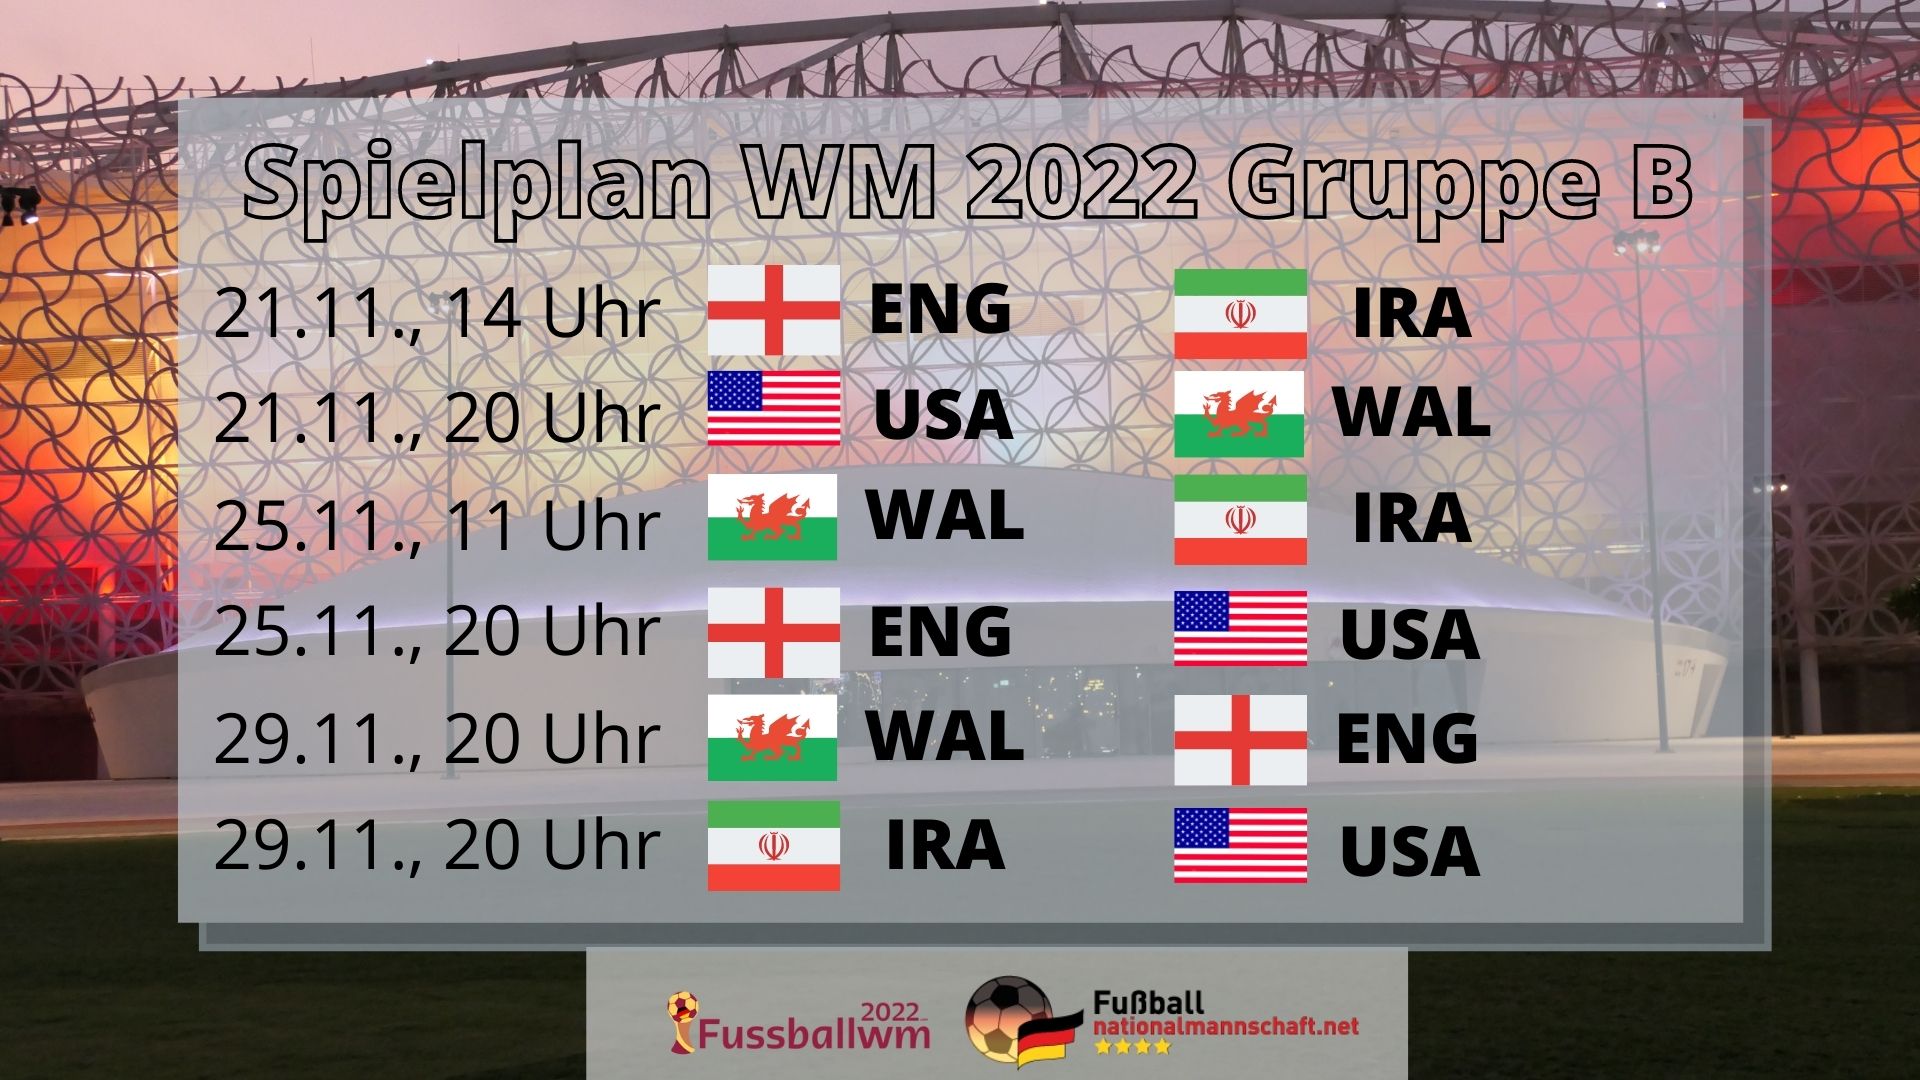 WM 2022 Gruppe B Spielplan